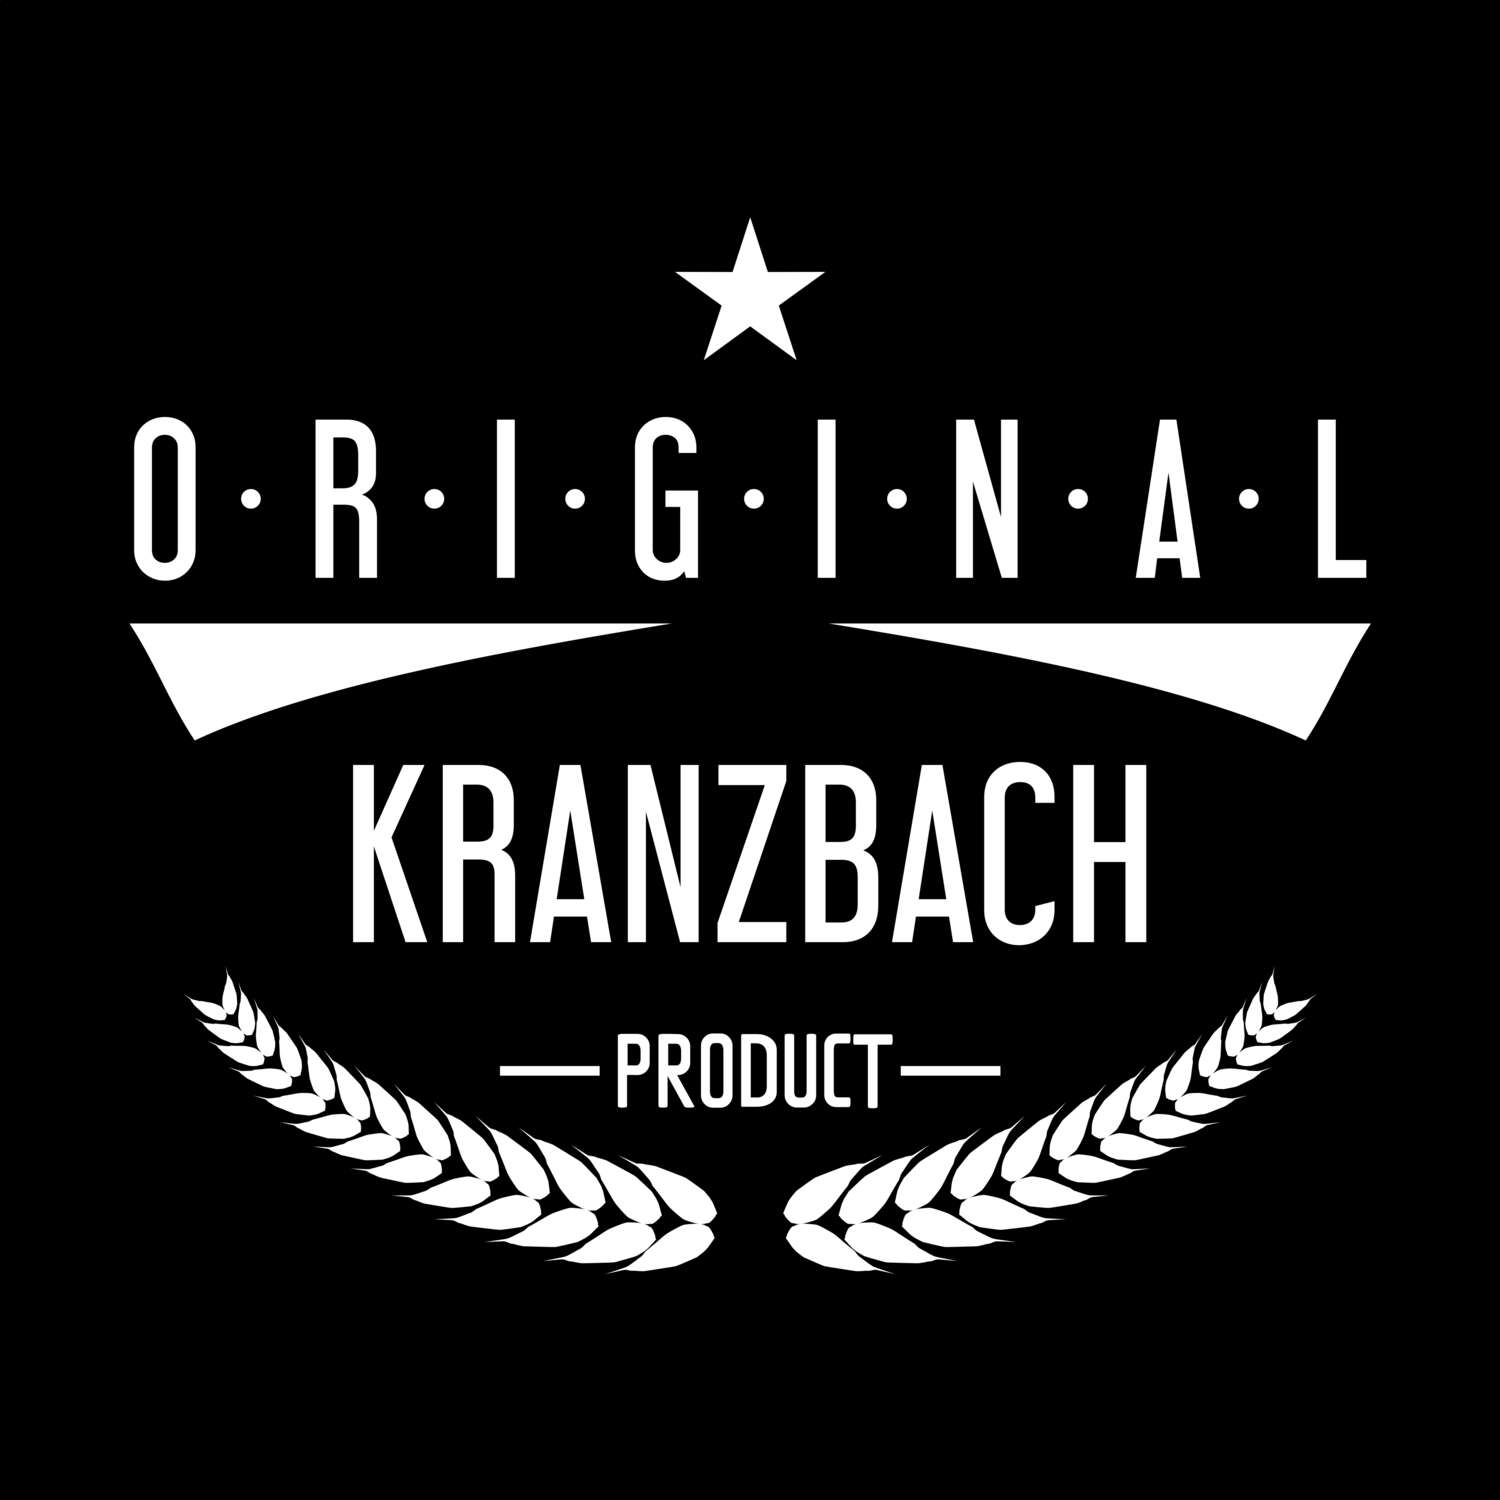 Kranzbach T-Shirt »Original Product«